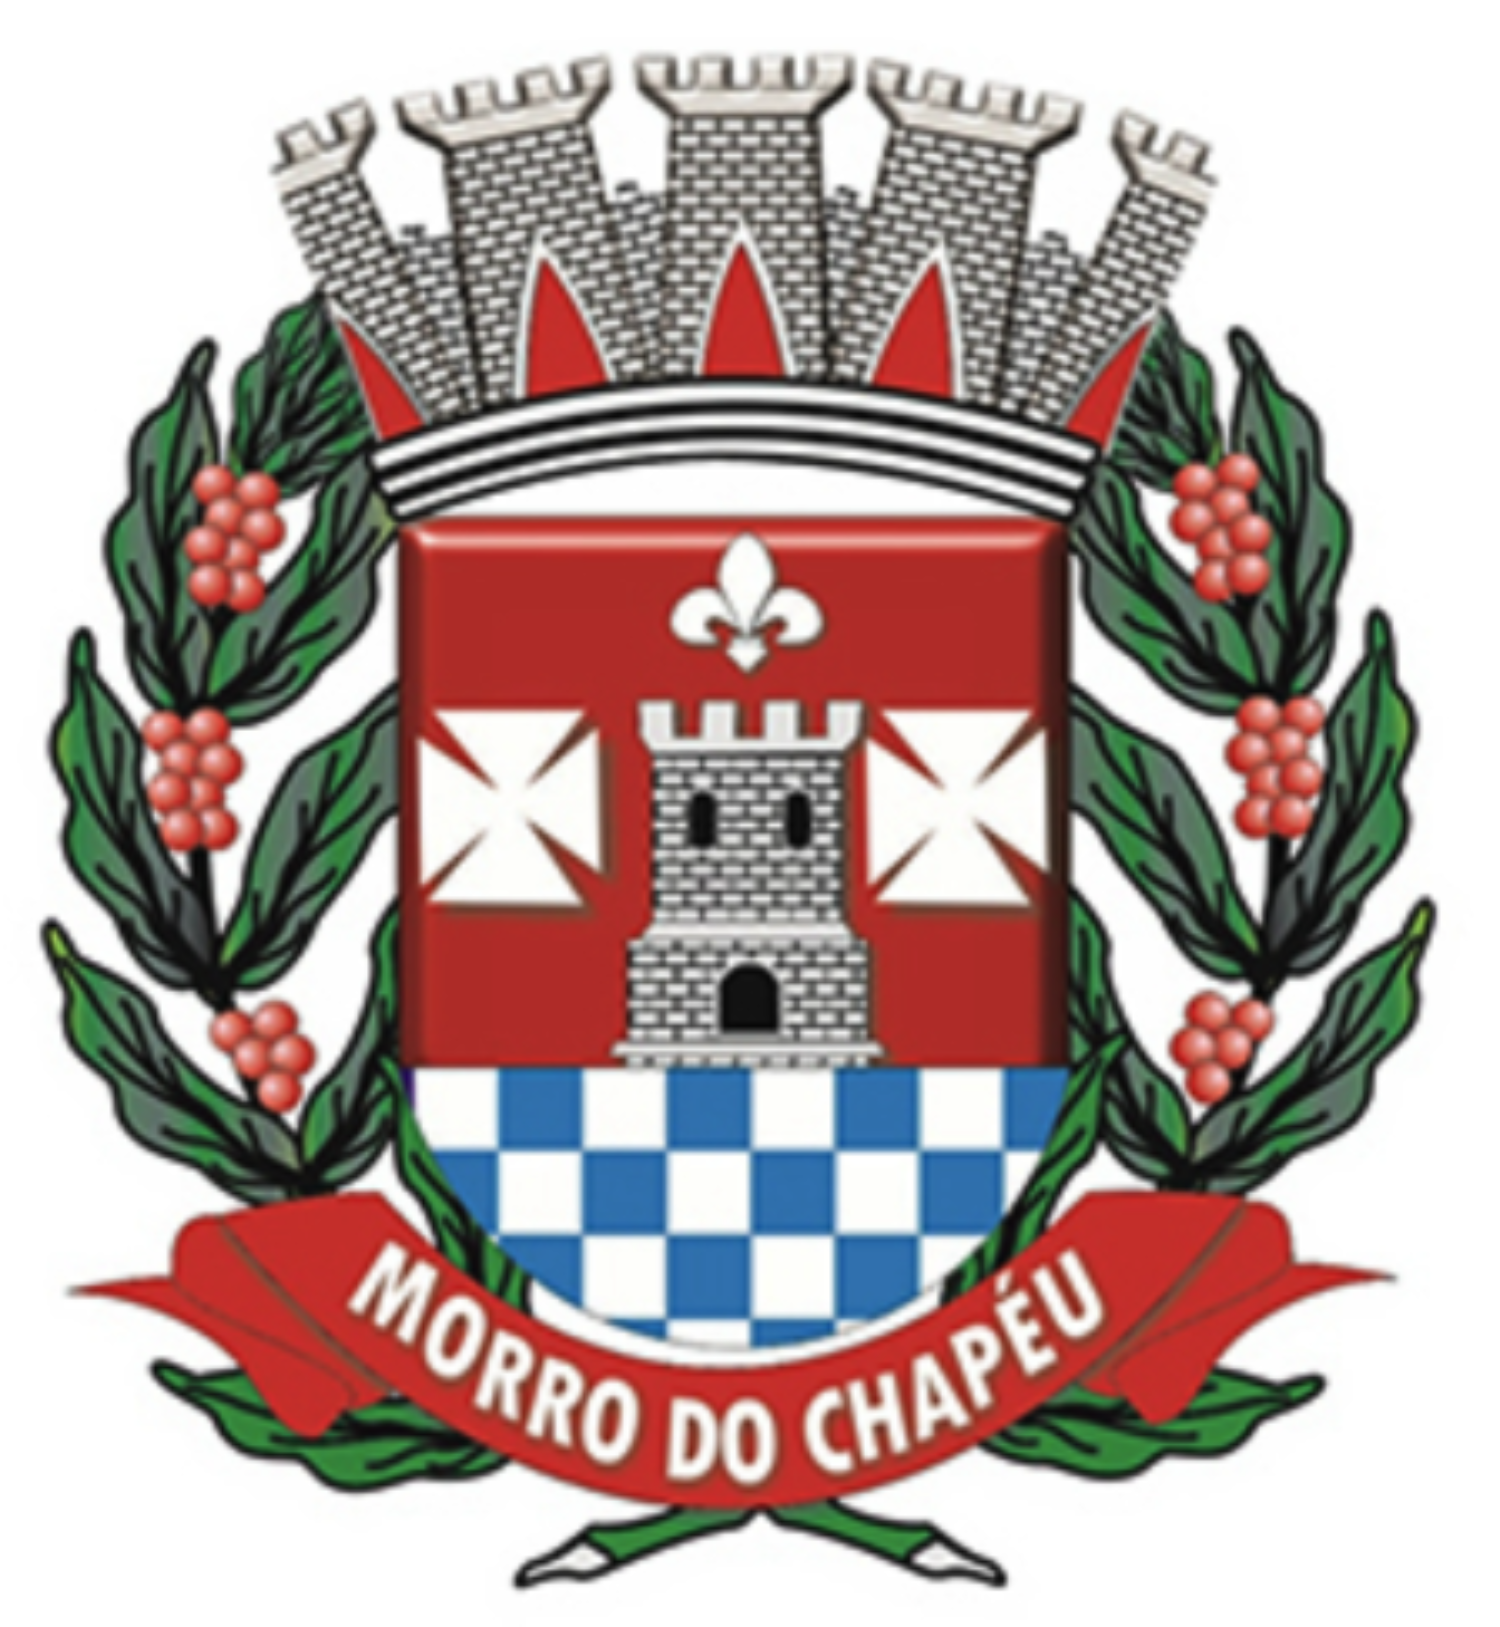  Vereadores -Câmara de Morro do Chapéu - Bahia